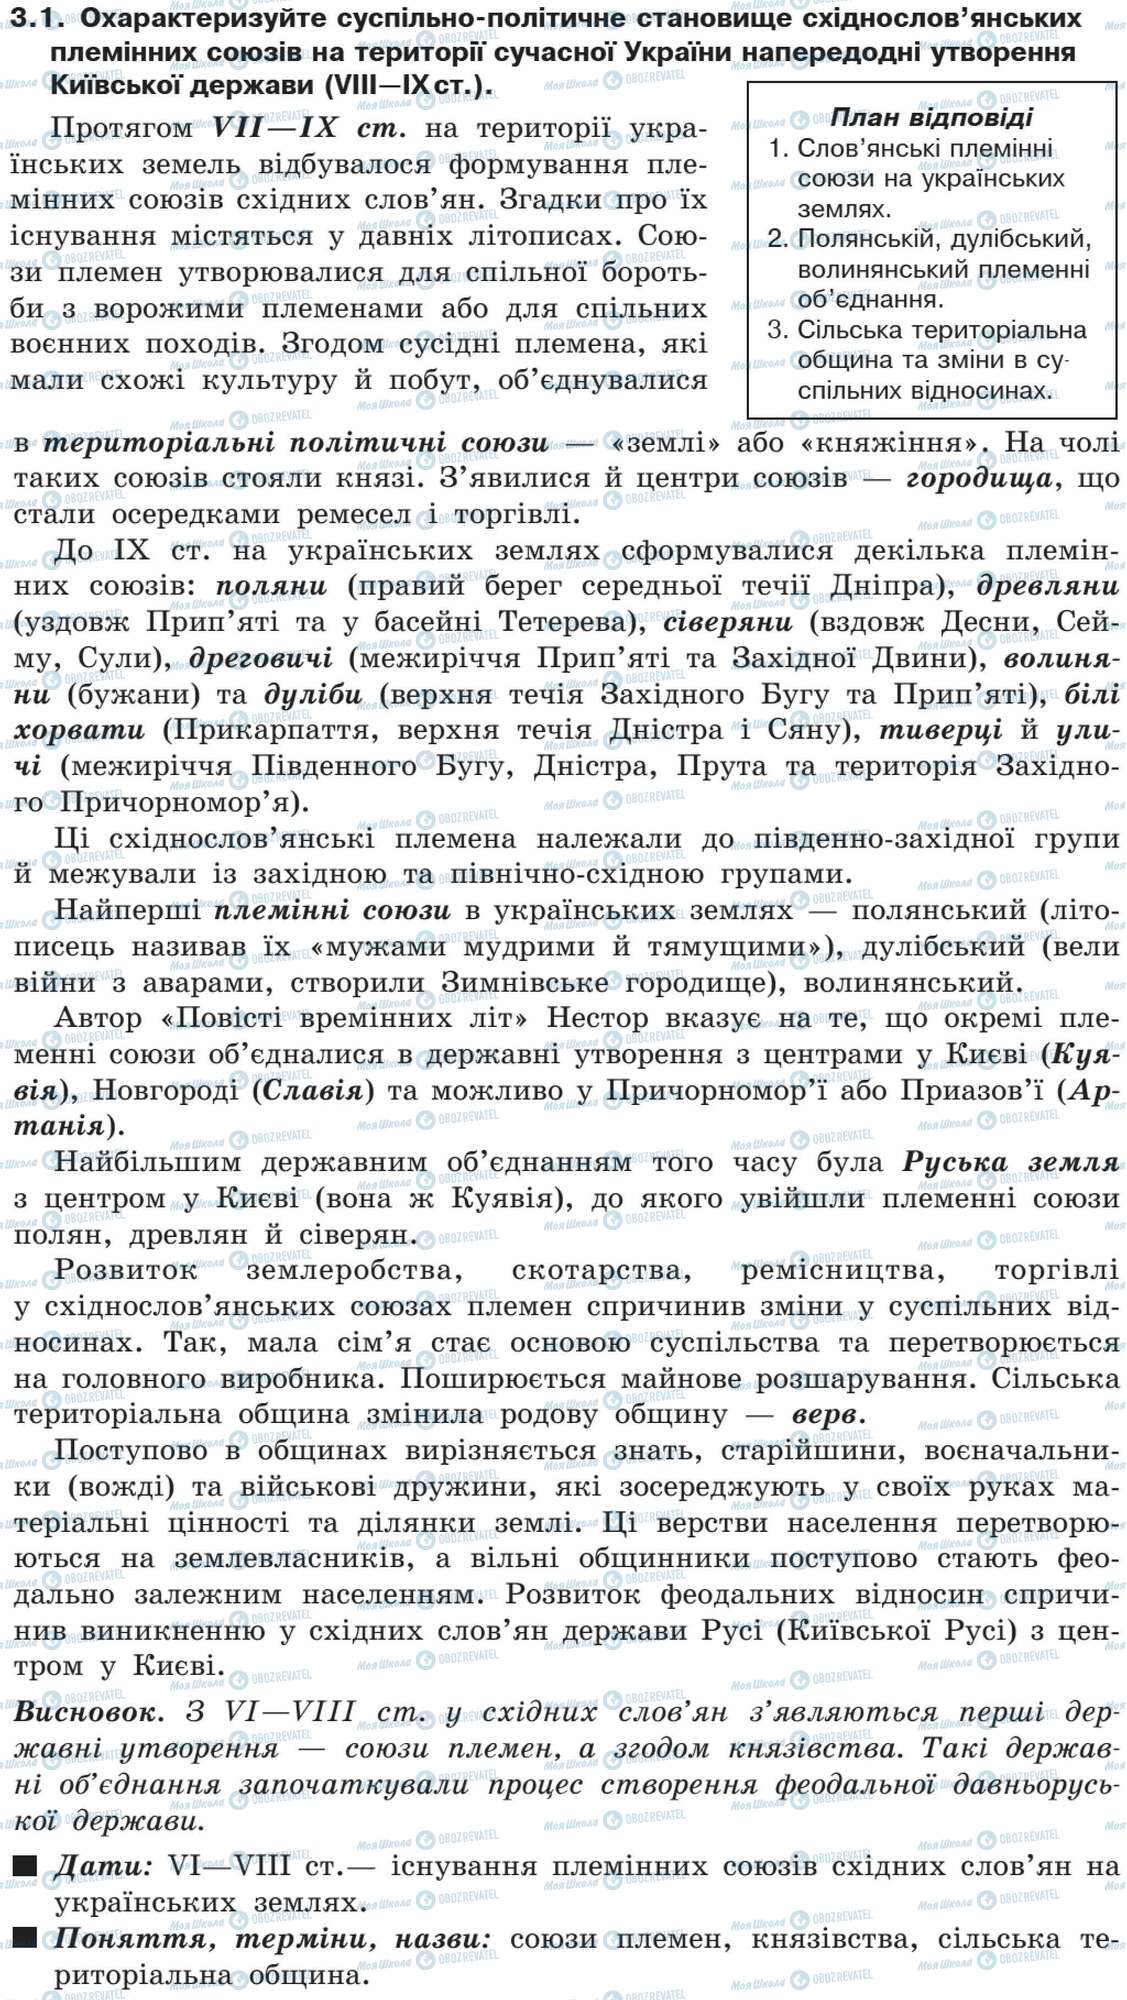 ДПА История Украины 9 класс страница 3.1